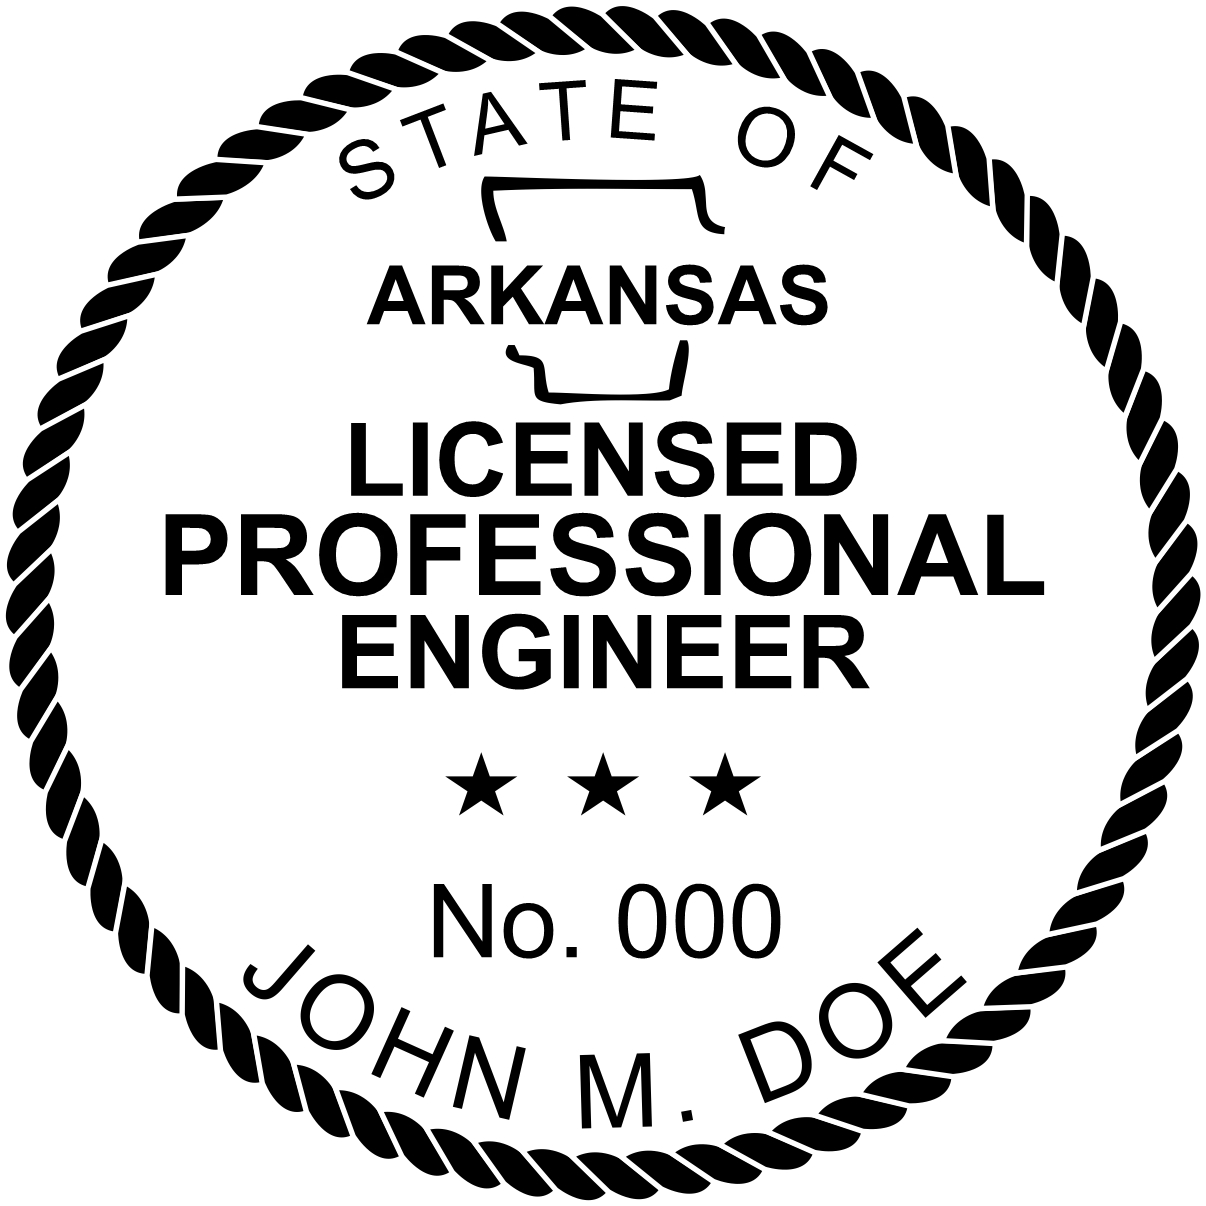 Engineer Seal - Pre Inked Stamp - Arkansas